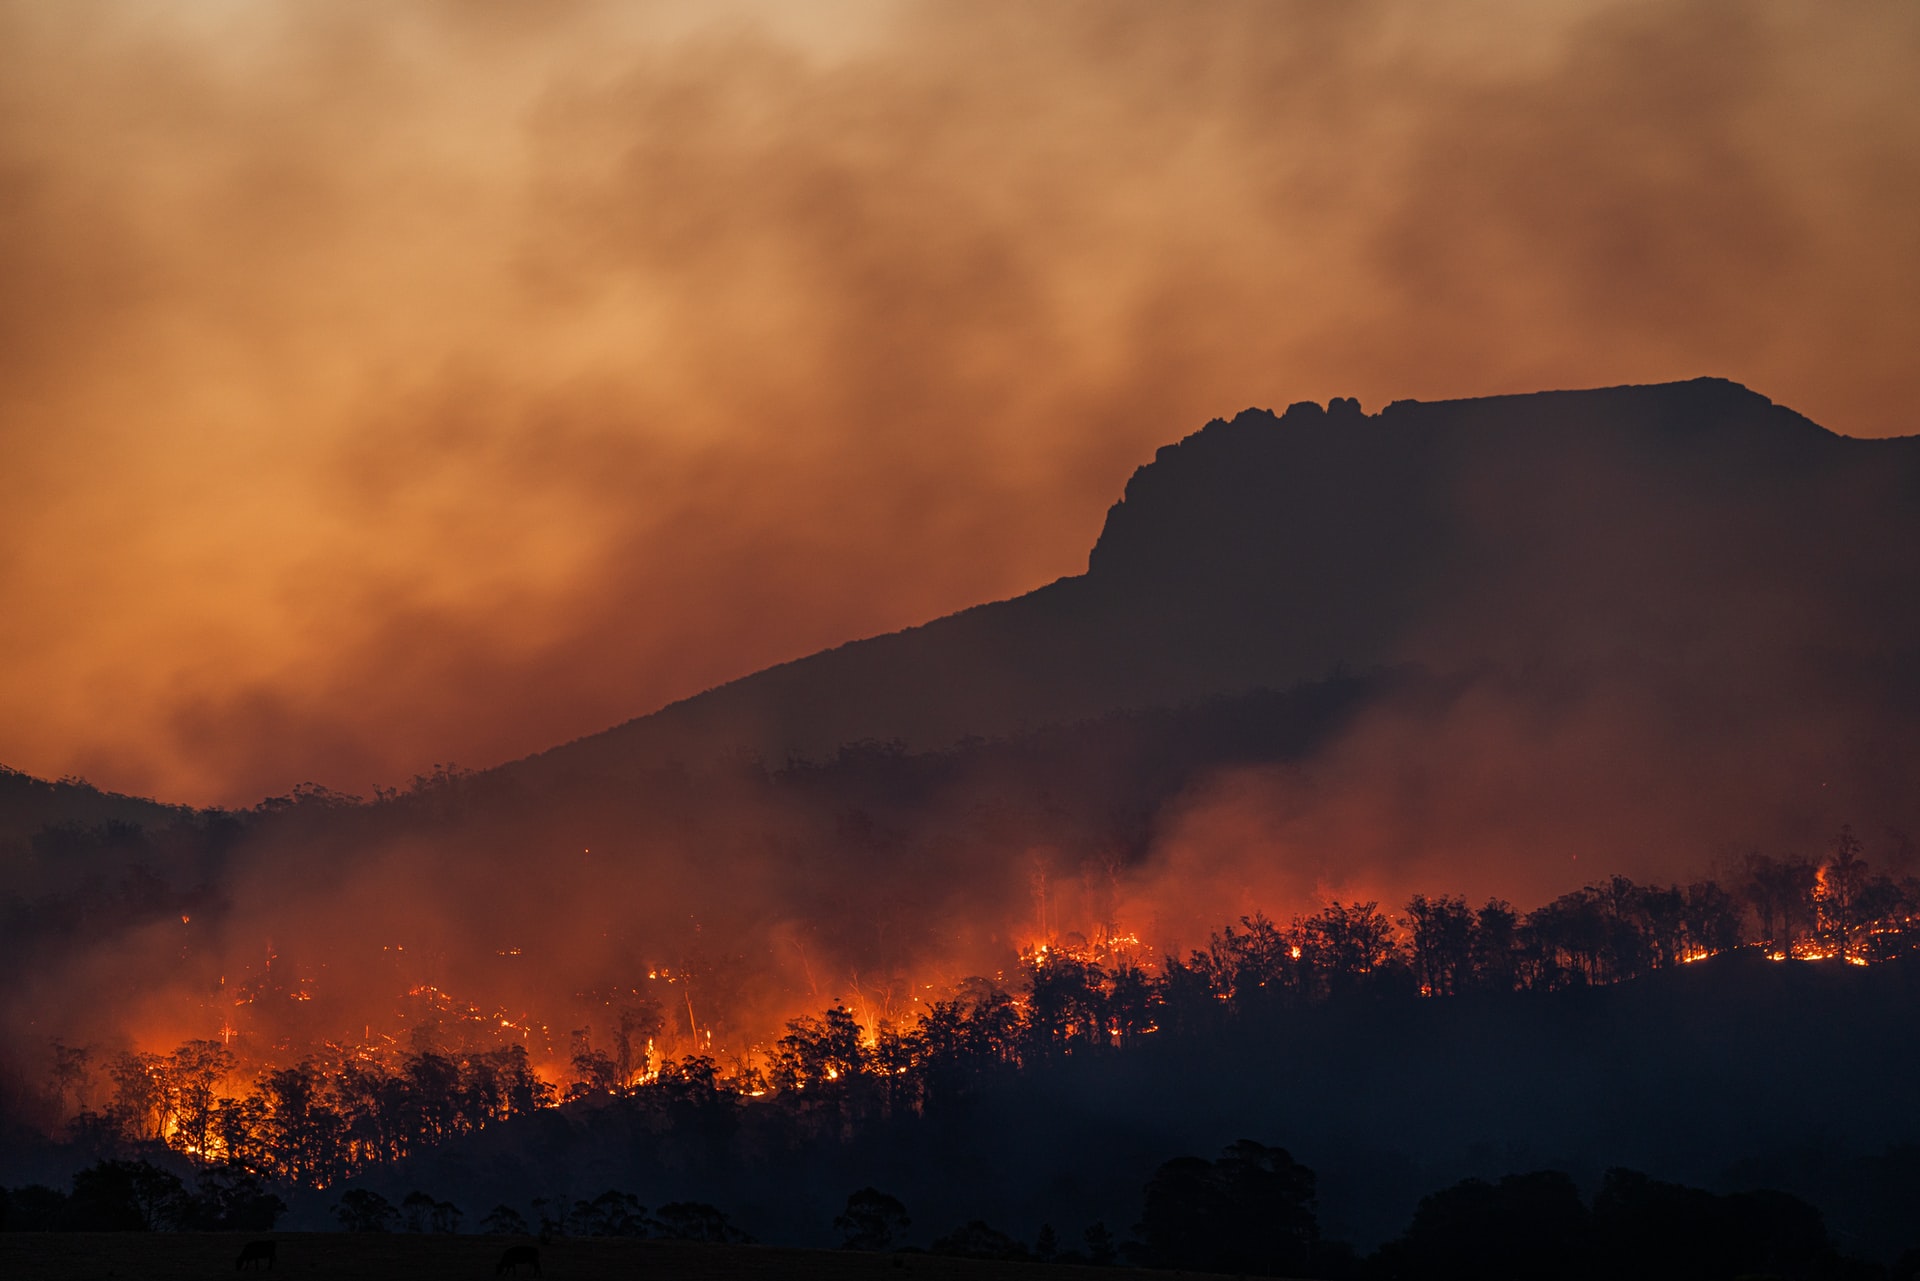 Los incendios forestales aumentarán un 30% para 2050